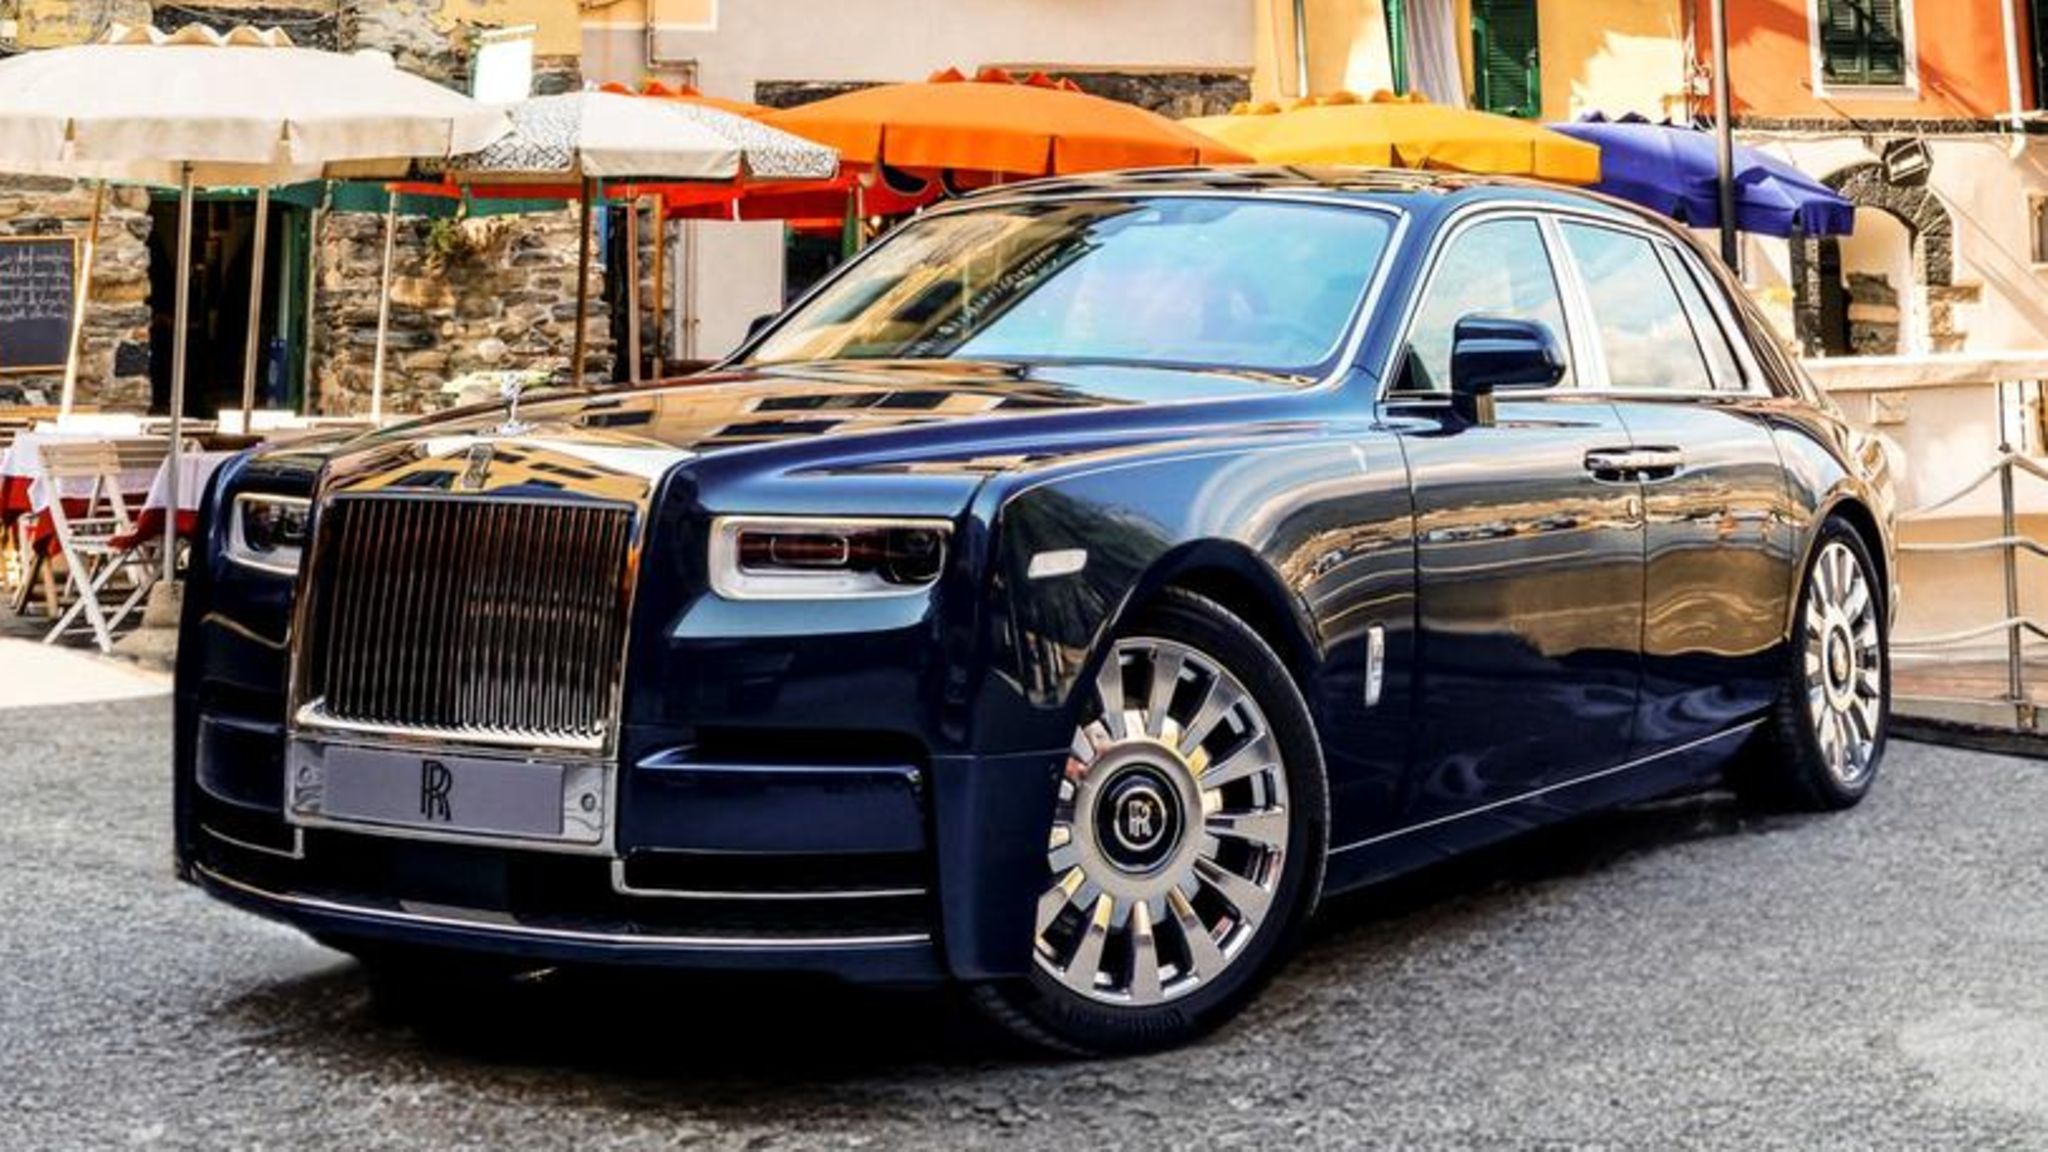 Rolls-Royce Cinque Terre: Eine luxuriöse Hommage an Italien